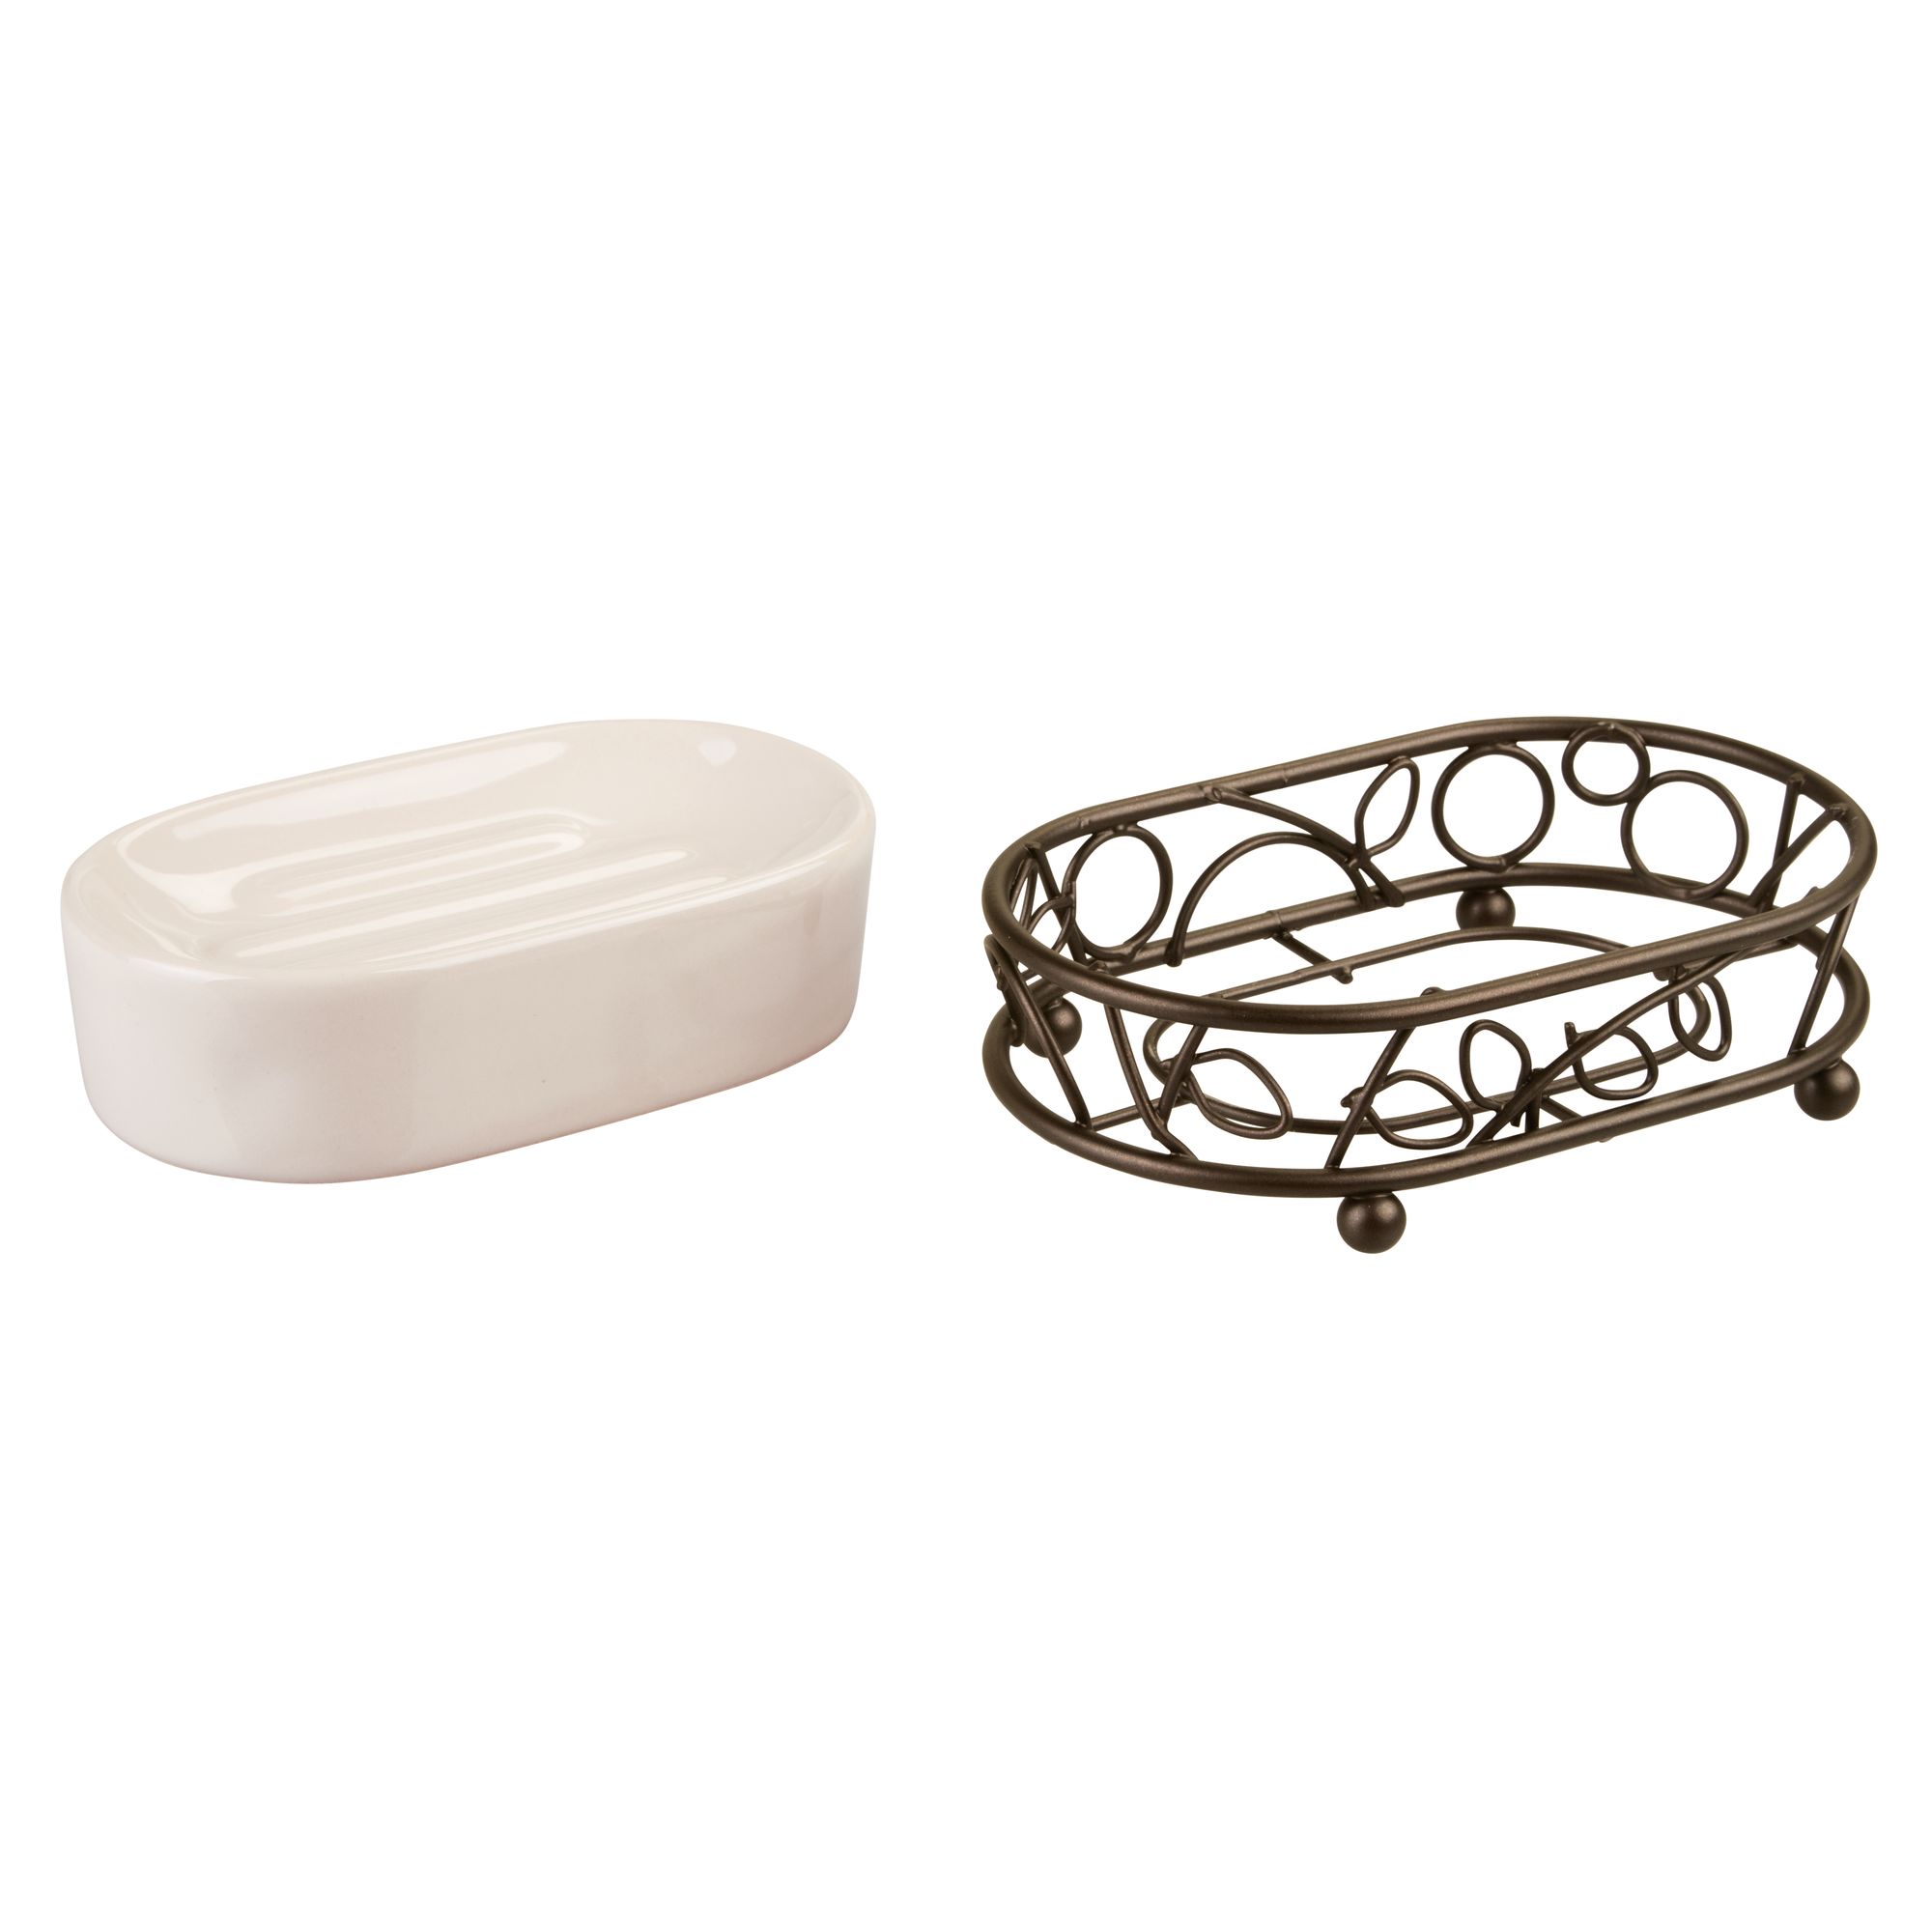 InterDesign Twigz Ceramic Soap Dish, Vanilla/Bronze - image 3 of 5